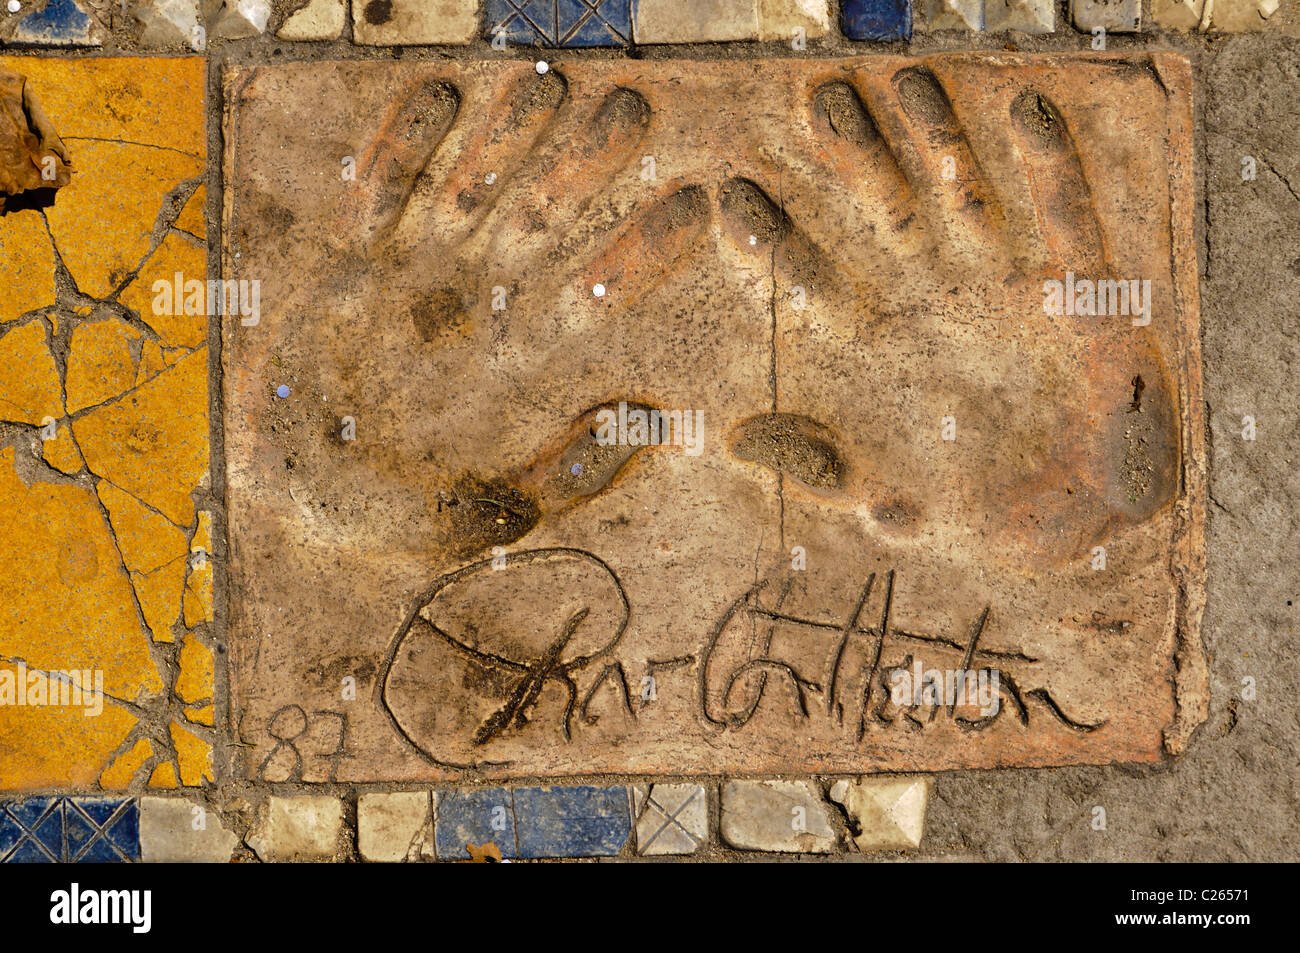 Clay handprint of actor Charlton Heston outside the Palais des Festivals et des Congrès, Cannes Stock Photo